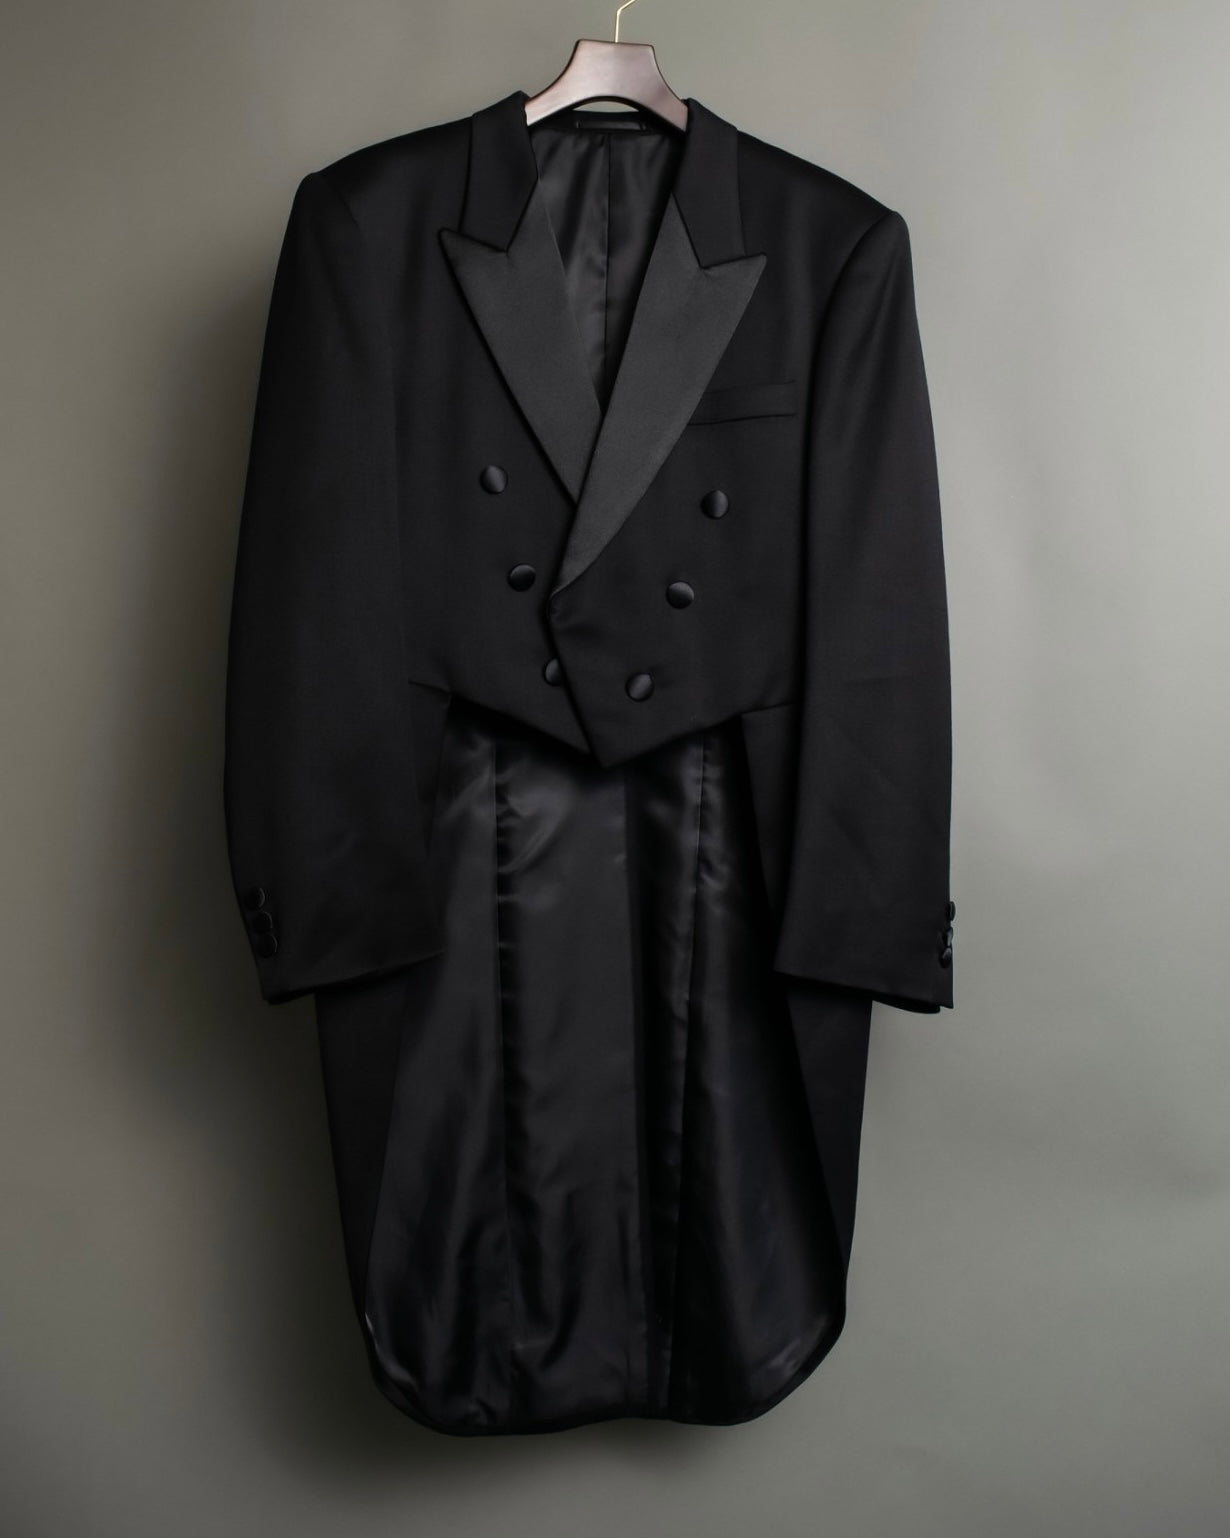 Vintage Tuxedo suits